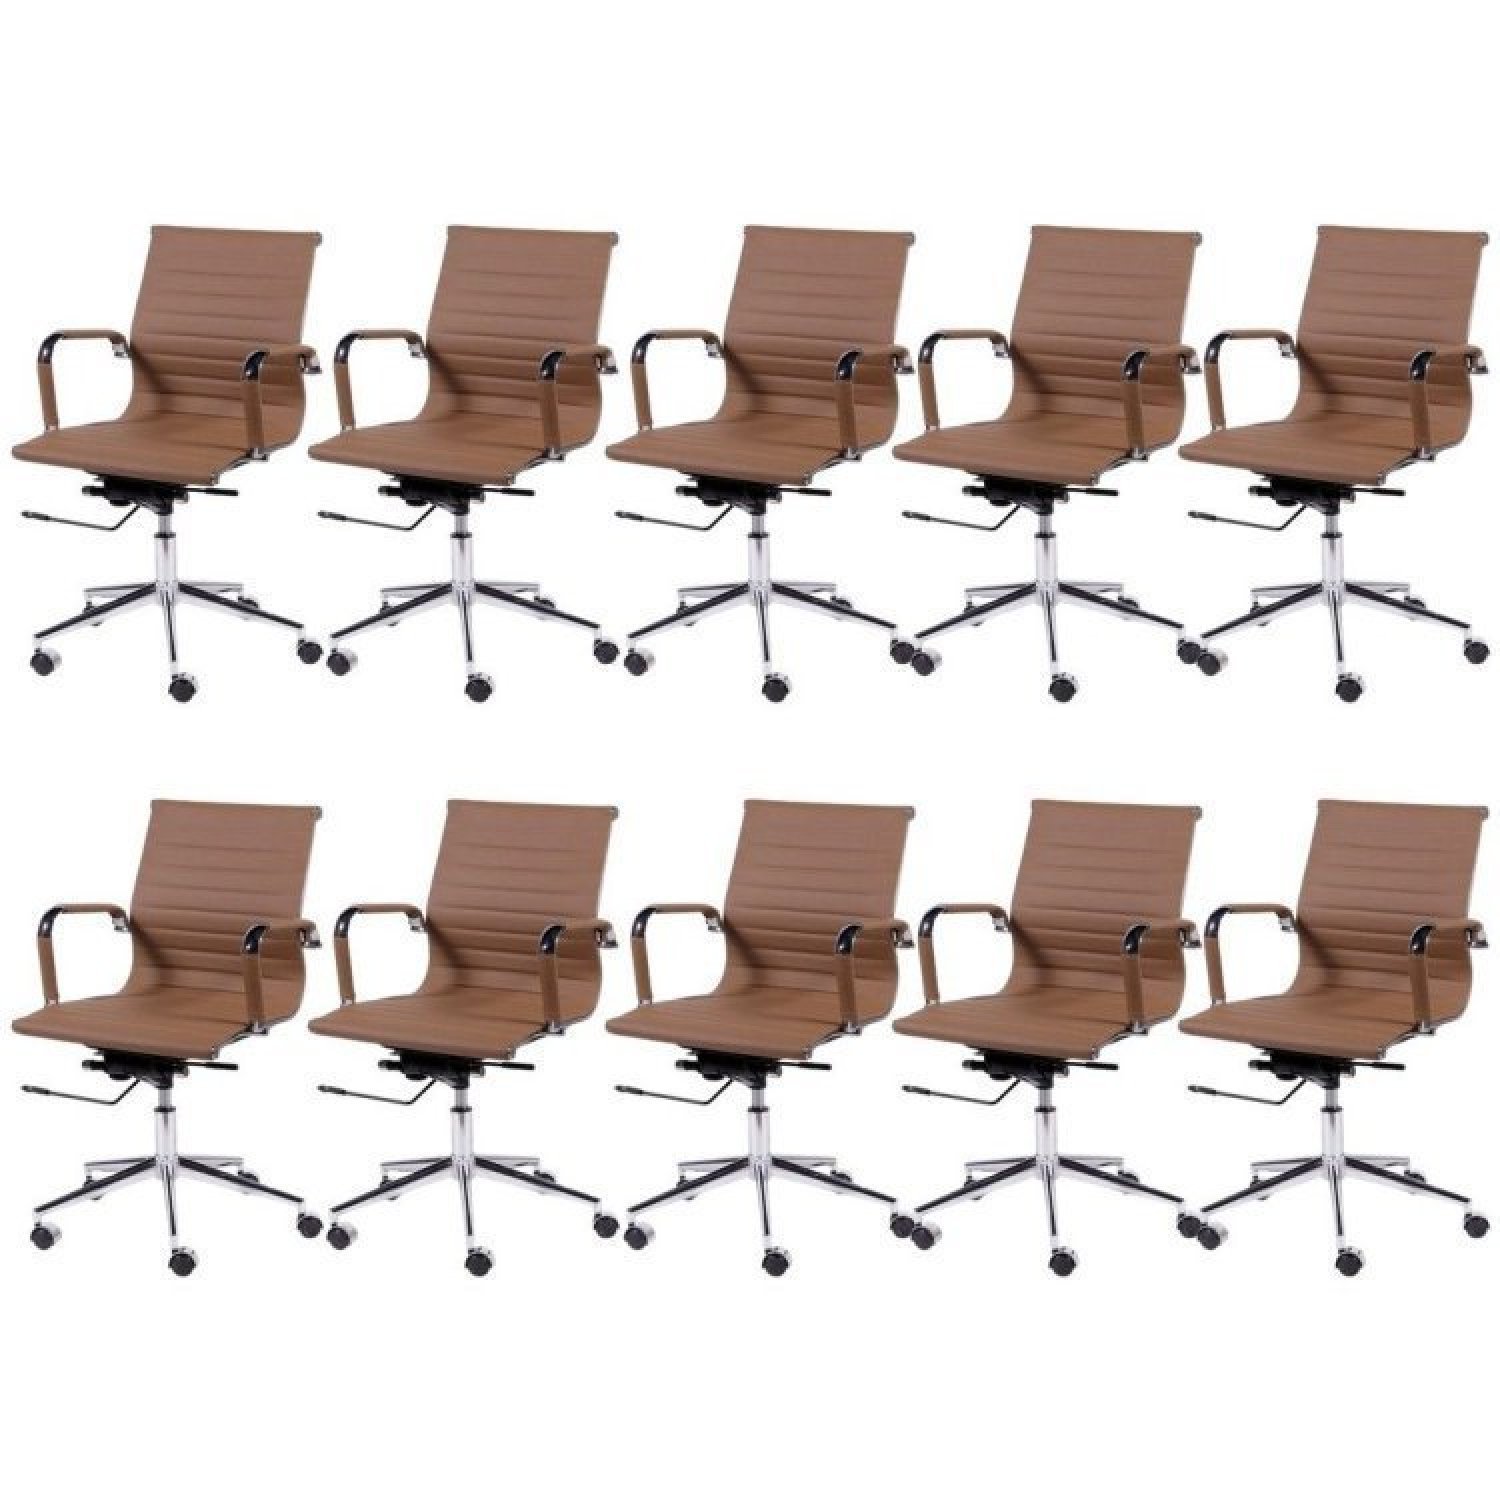 Kit 10 Cadeiras para Escritório Diretor Esteirinha com Relax Corino 3301 OR Design